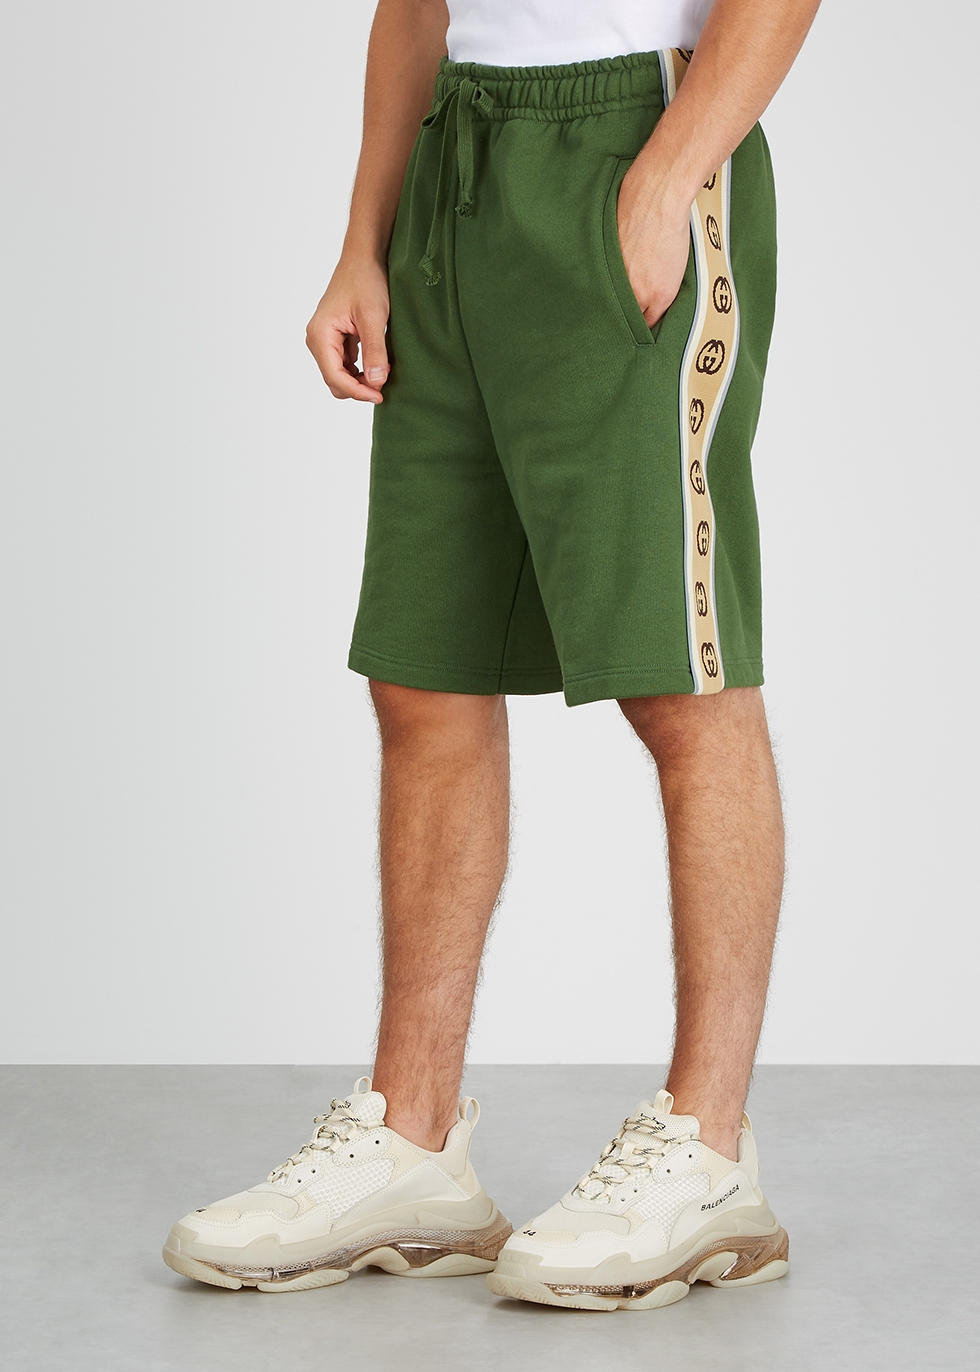 gucci green shorts